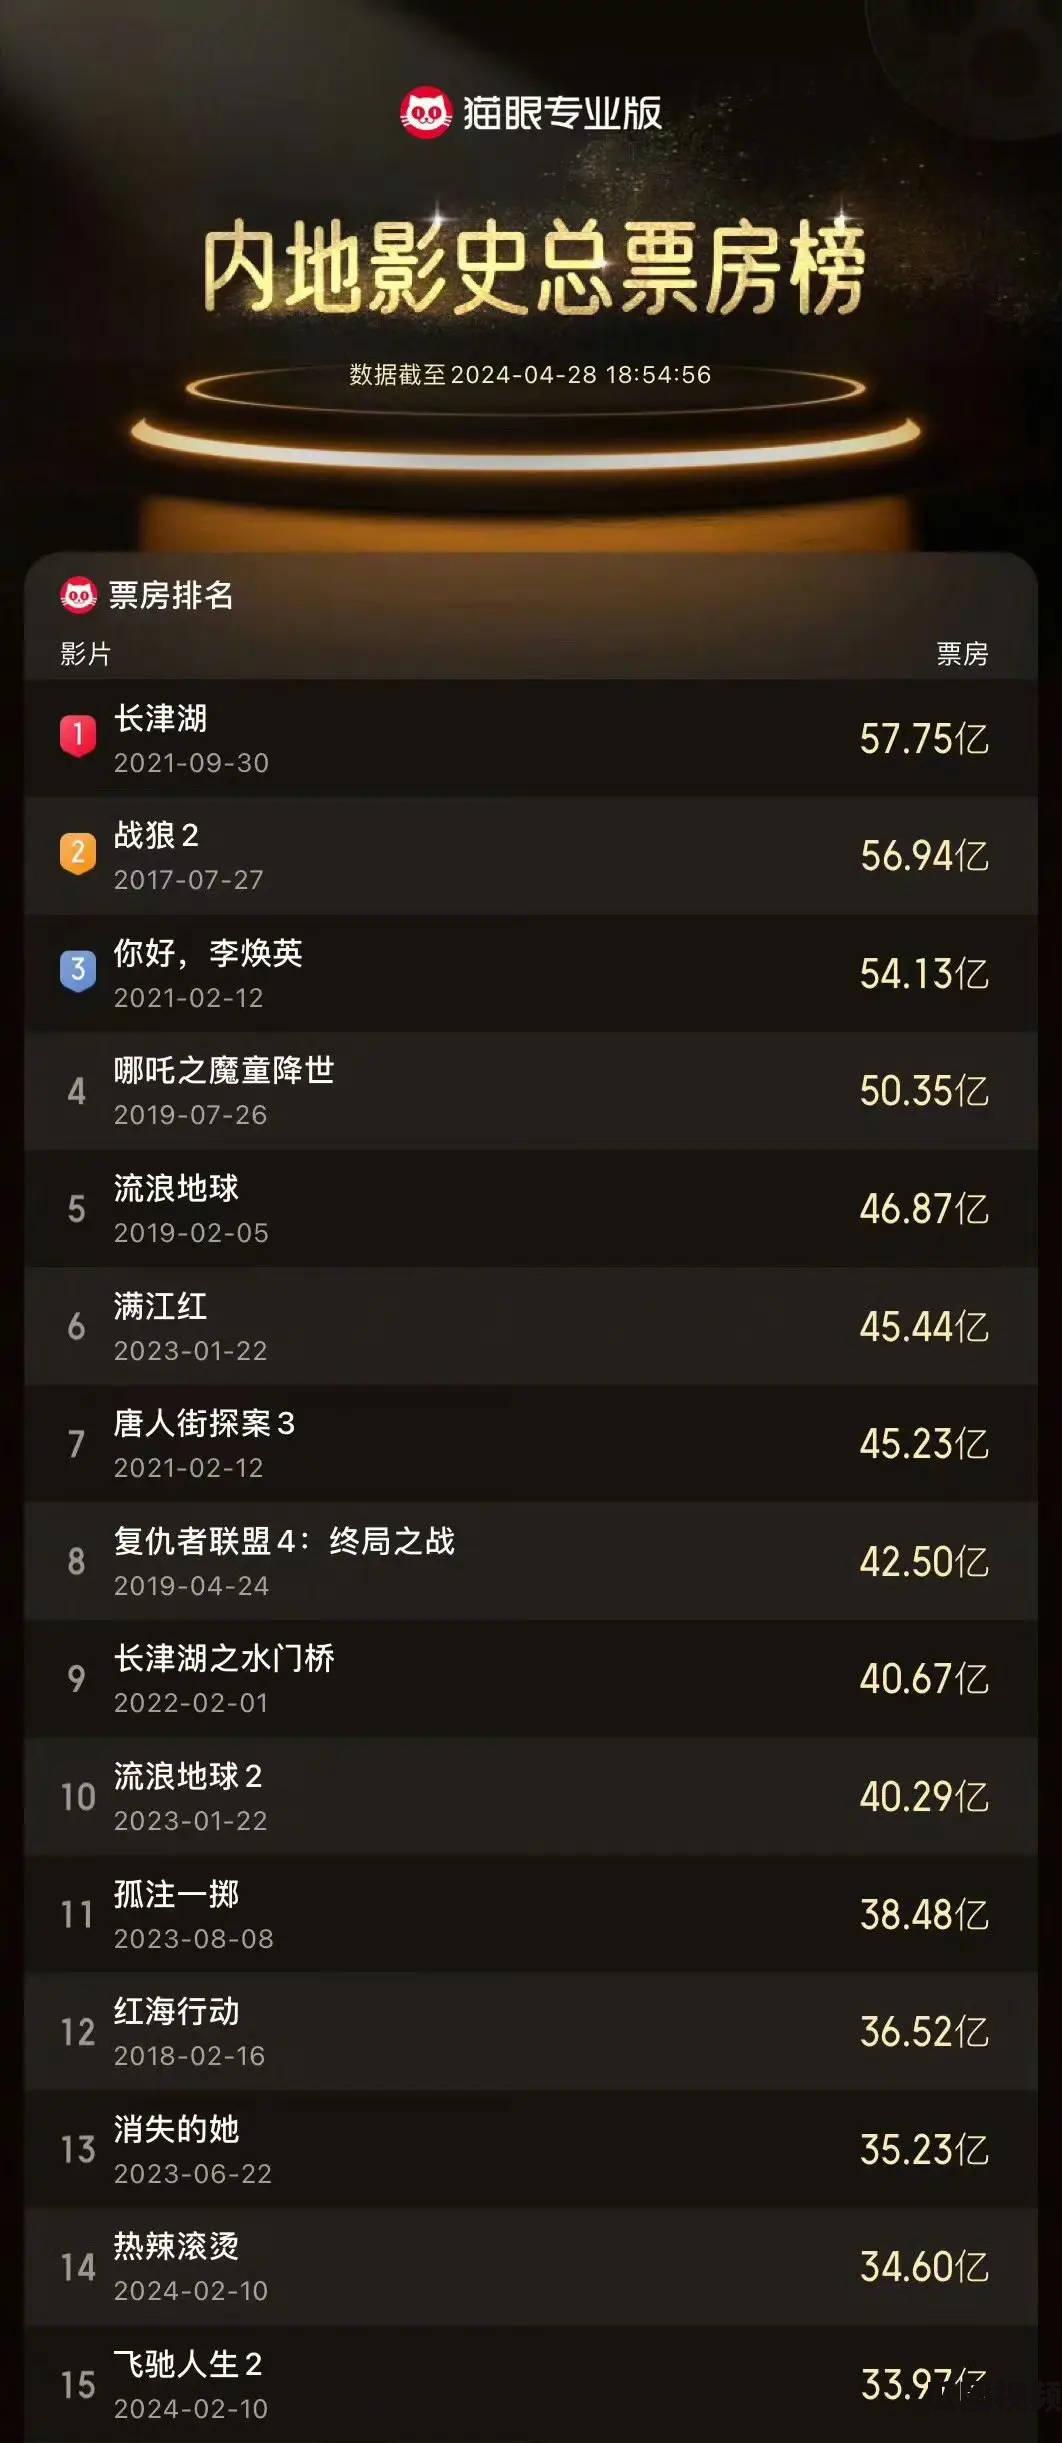 《飞驰人生2》总票房超越《唐探2》创中国影史top15